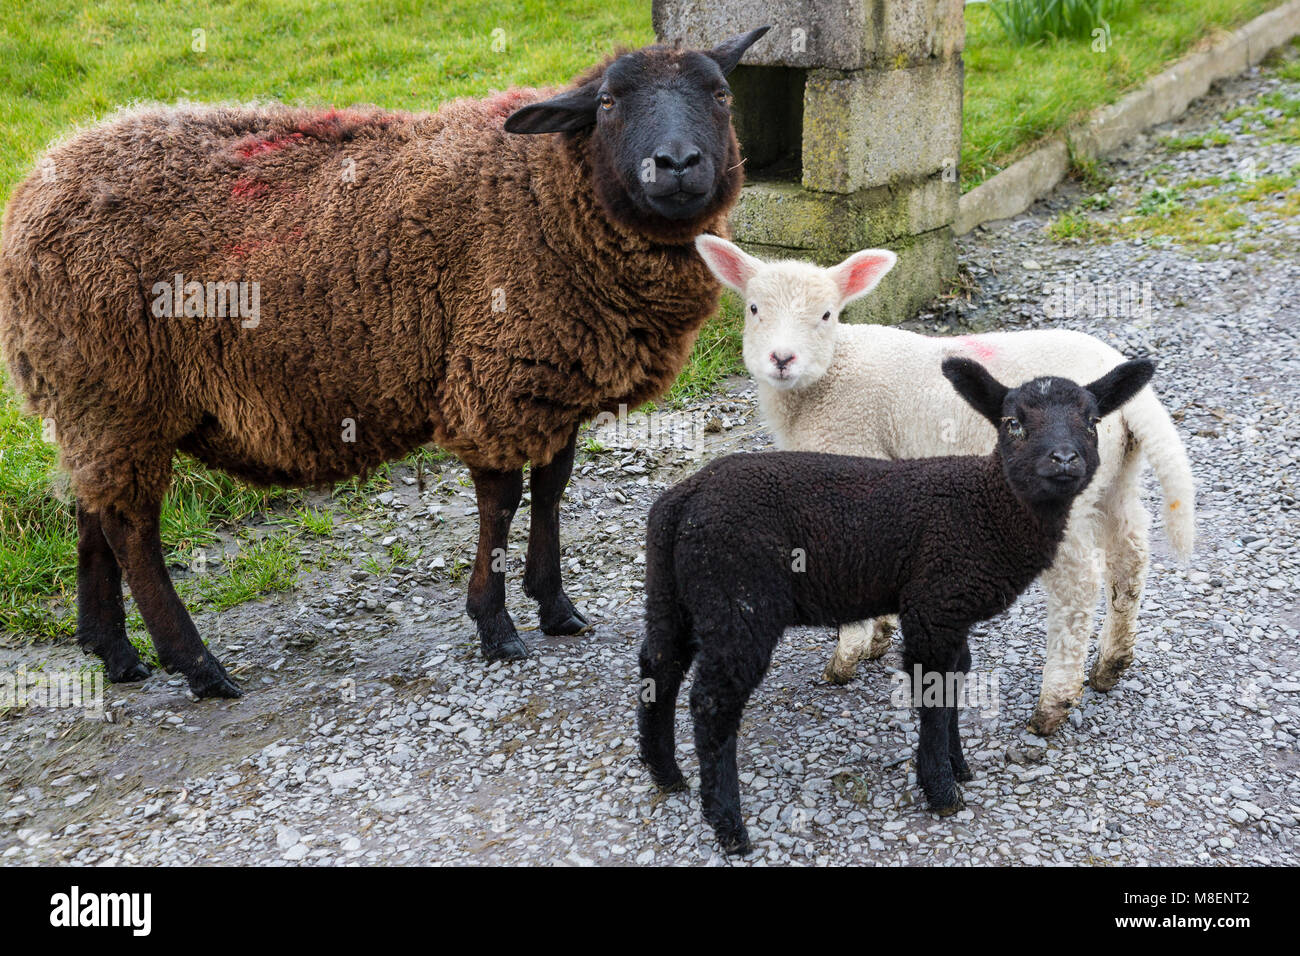 Une brebis et ses agneaux perdu 2, dans le jardin de l'île de Valentia, comté de Kerry, Irlande sur St Patrick's Day Banque D'Images